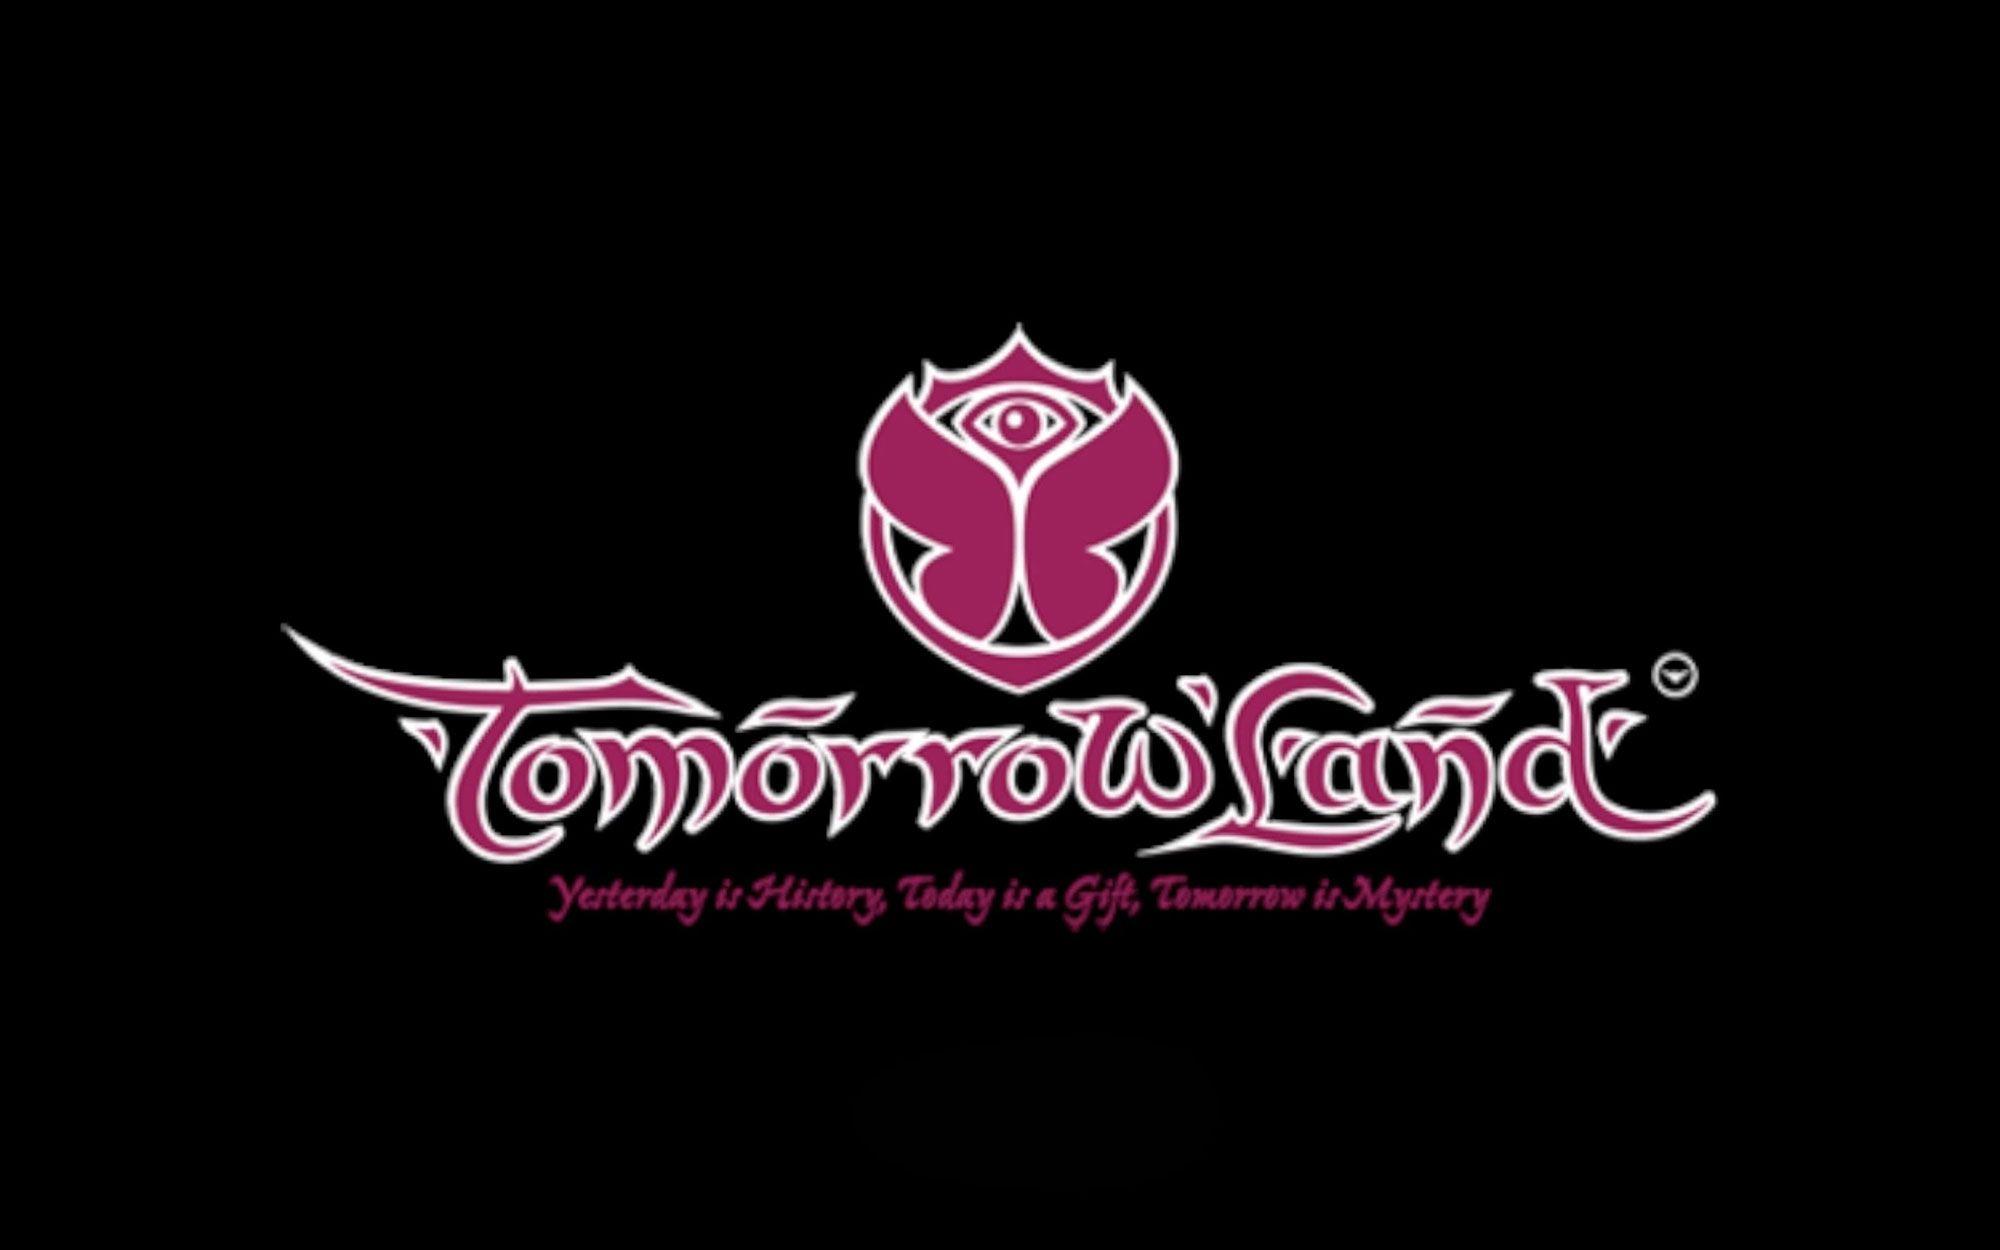 Tomorrowland Logo - Tomorrowland Festival (Boom, Belgium) - The Sound Clique